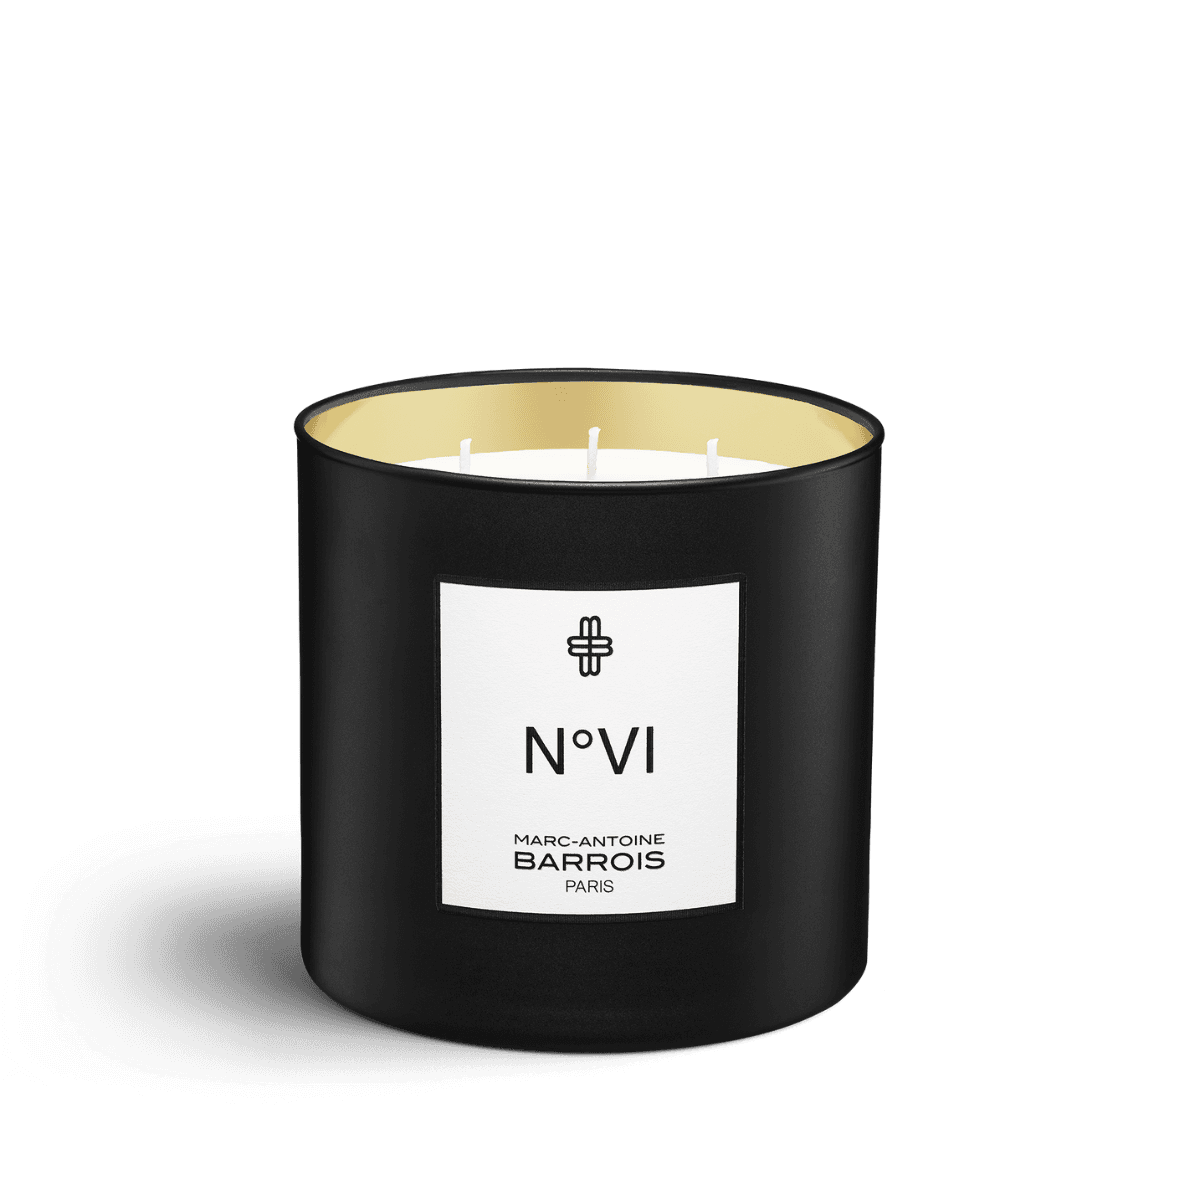 Afbeelding van No6 scented candle 220 gram van het merk Marc-Antoine Barrois